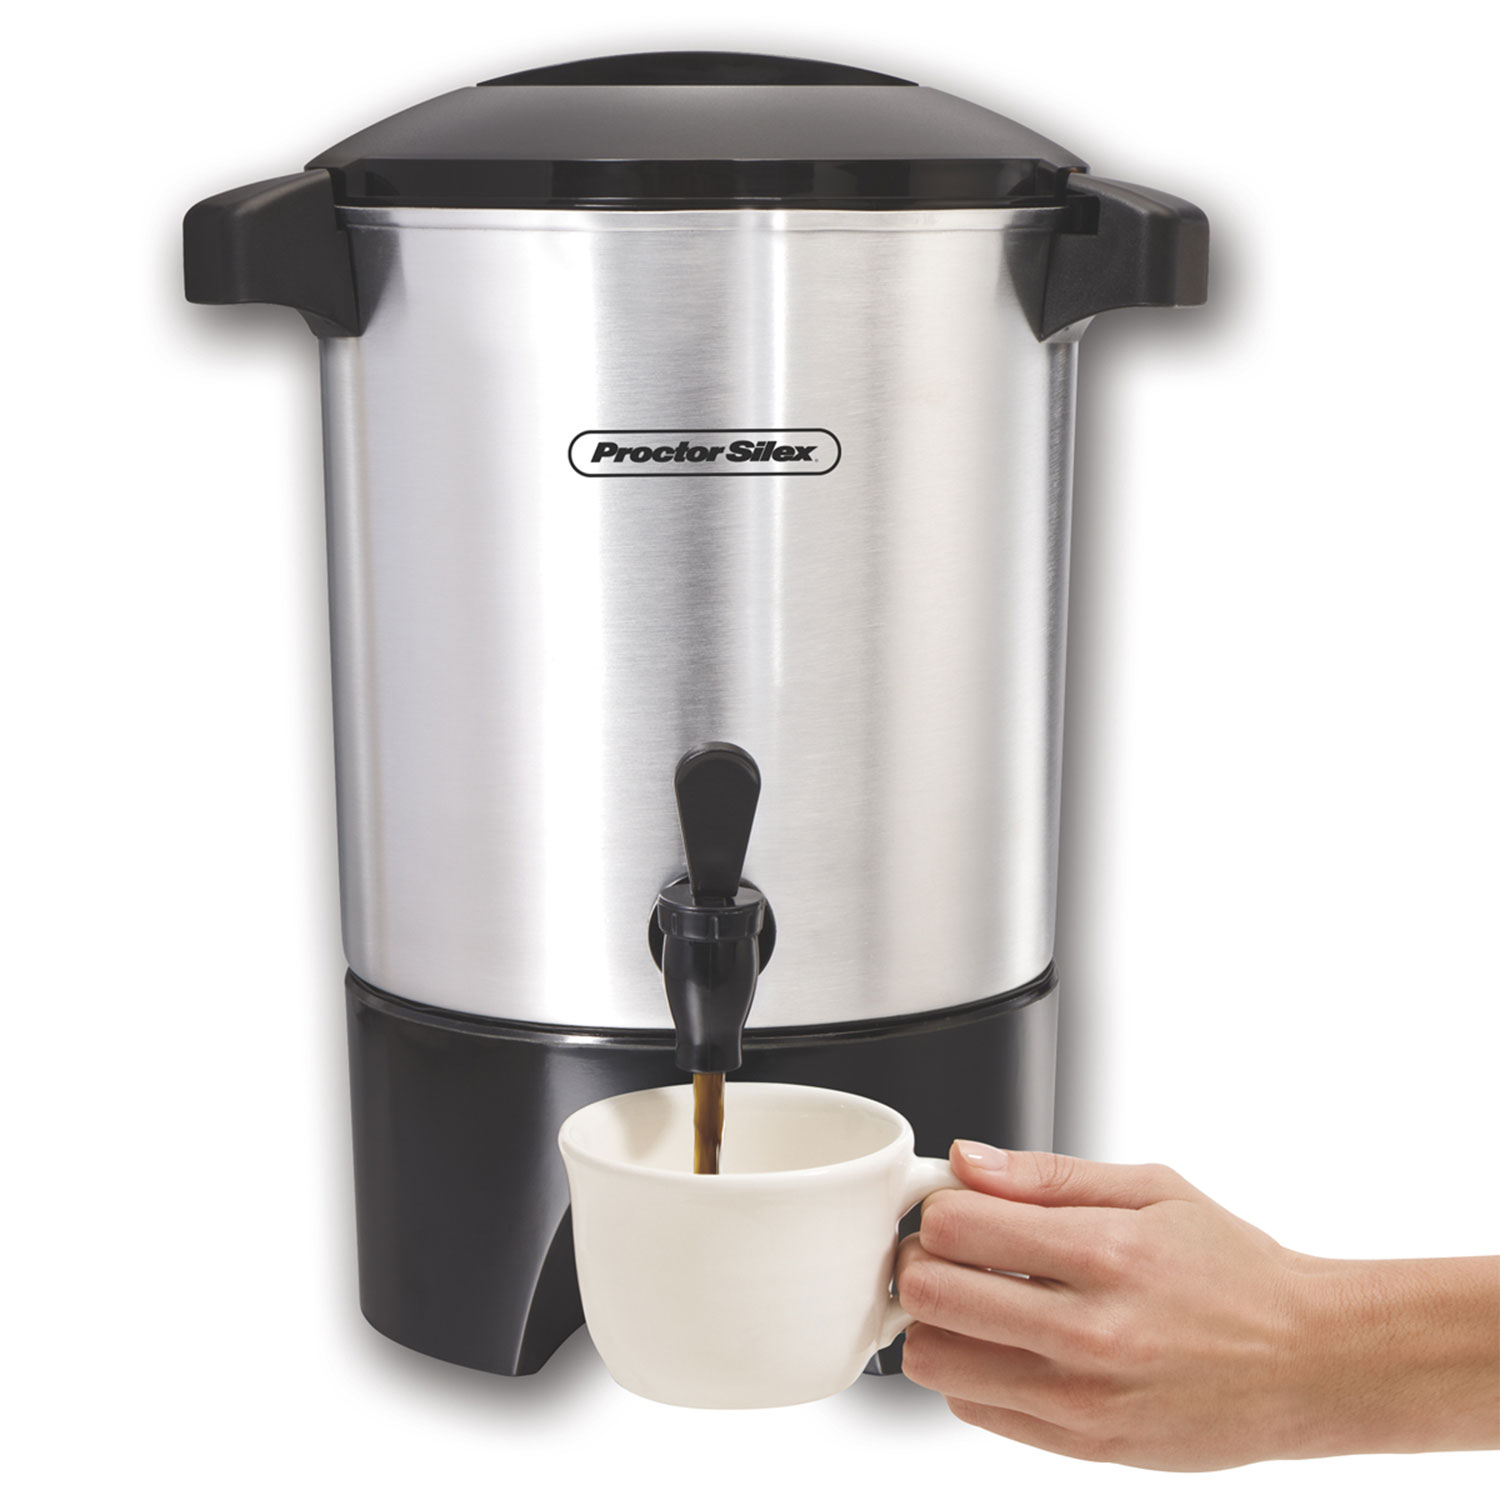 Coffee Urn (30 cup) | NESCO®Coffee Urn (30 cup) | NESCO®